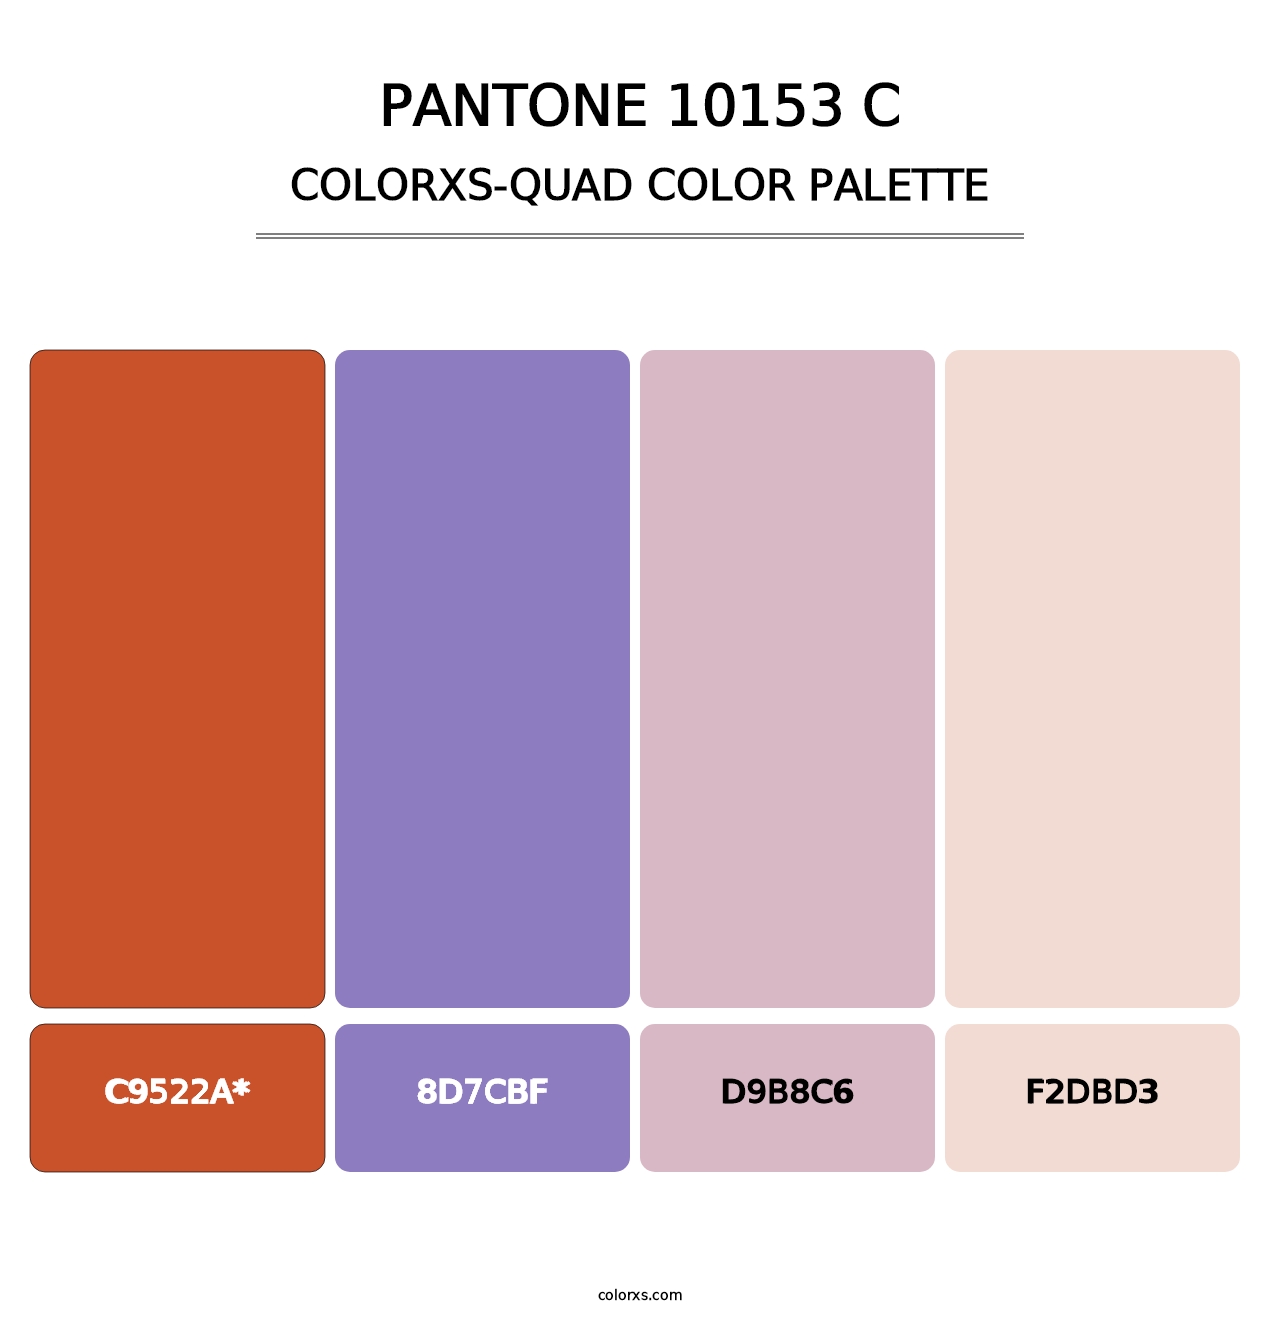 PANTONE 10153 C - Colorxs Quad Palette